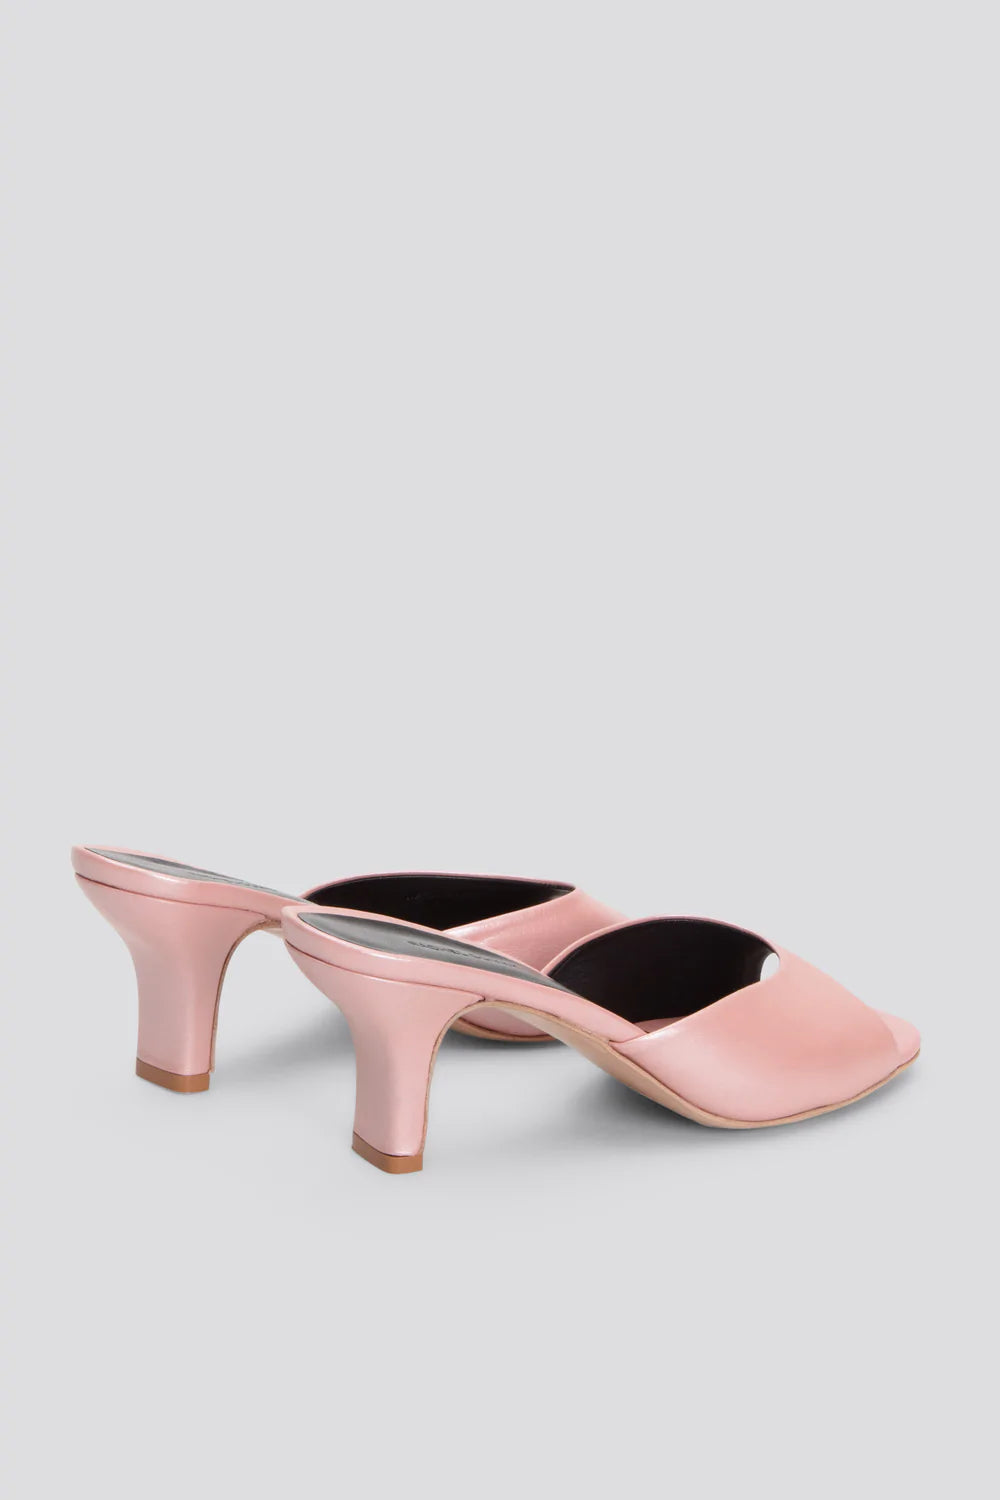 Rachel Comey- Kitten Heel: Pink